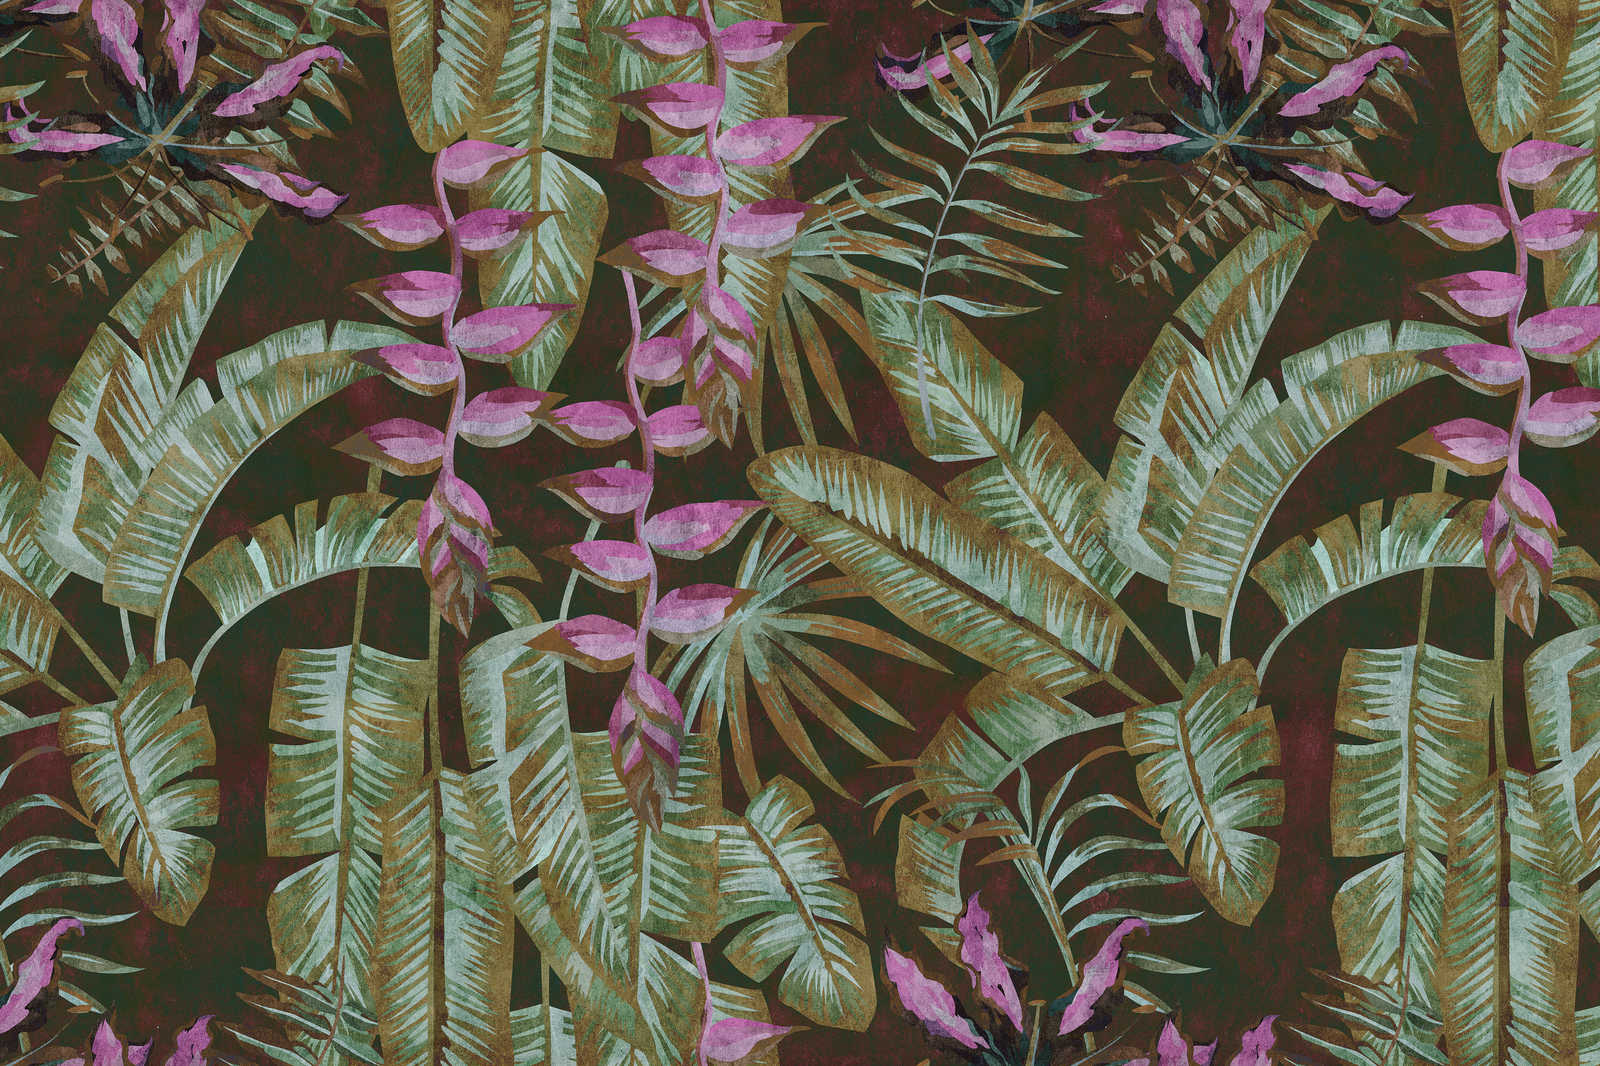             Tropicana 1 - Jungle Canvas Schilderij met Bananenbladeren & Varens - 0.90 m x 0.60 m
        